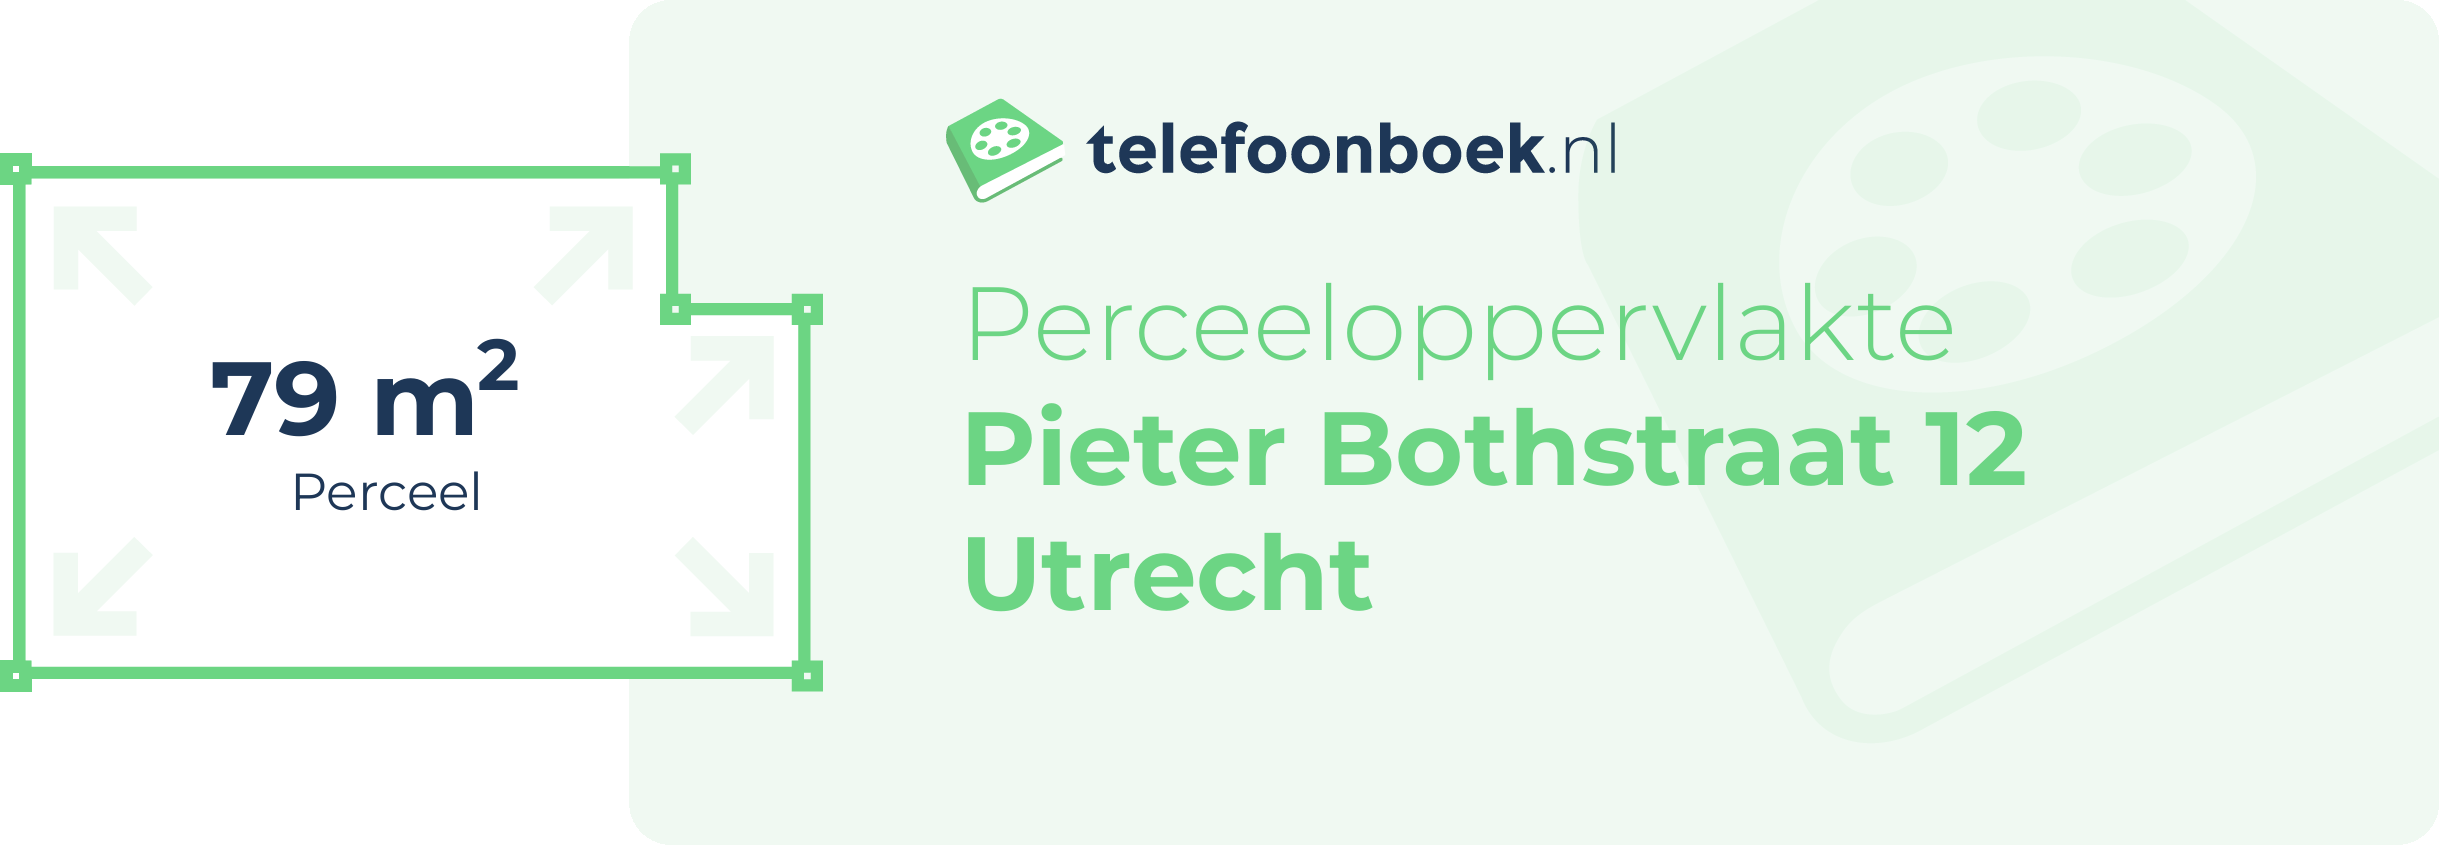 Perceeloppervlakte Pieter Bothstraat 12 Utrecht